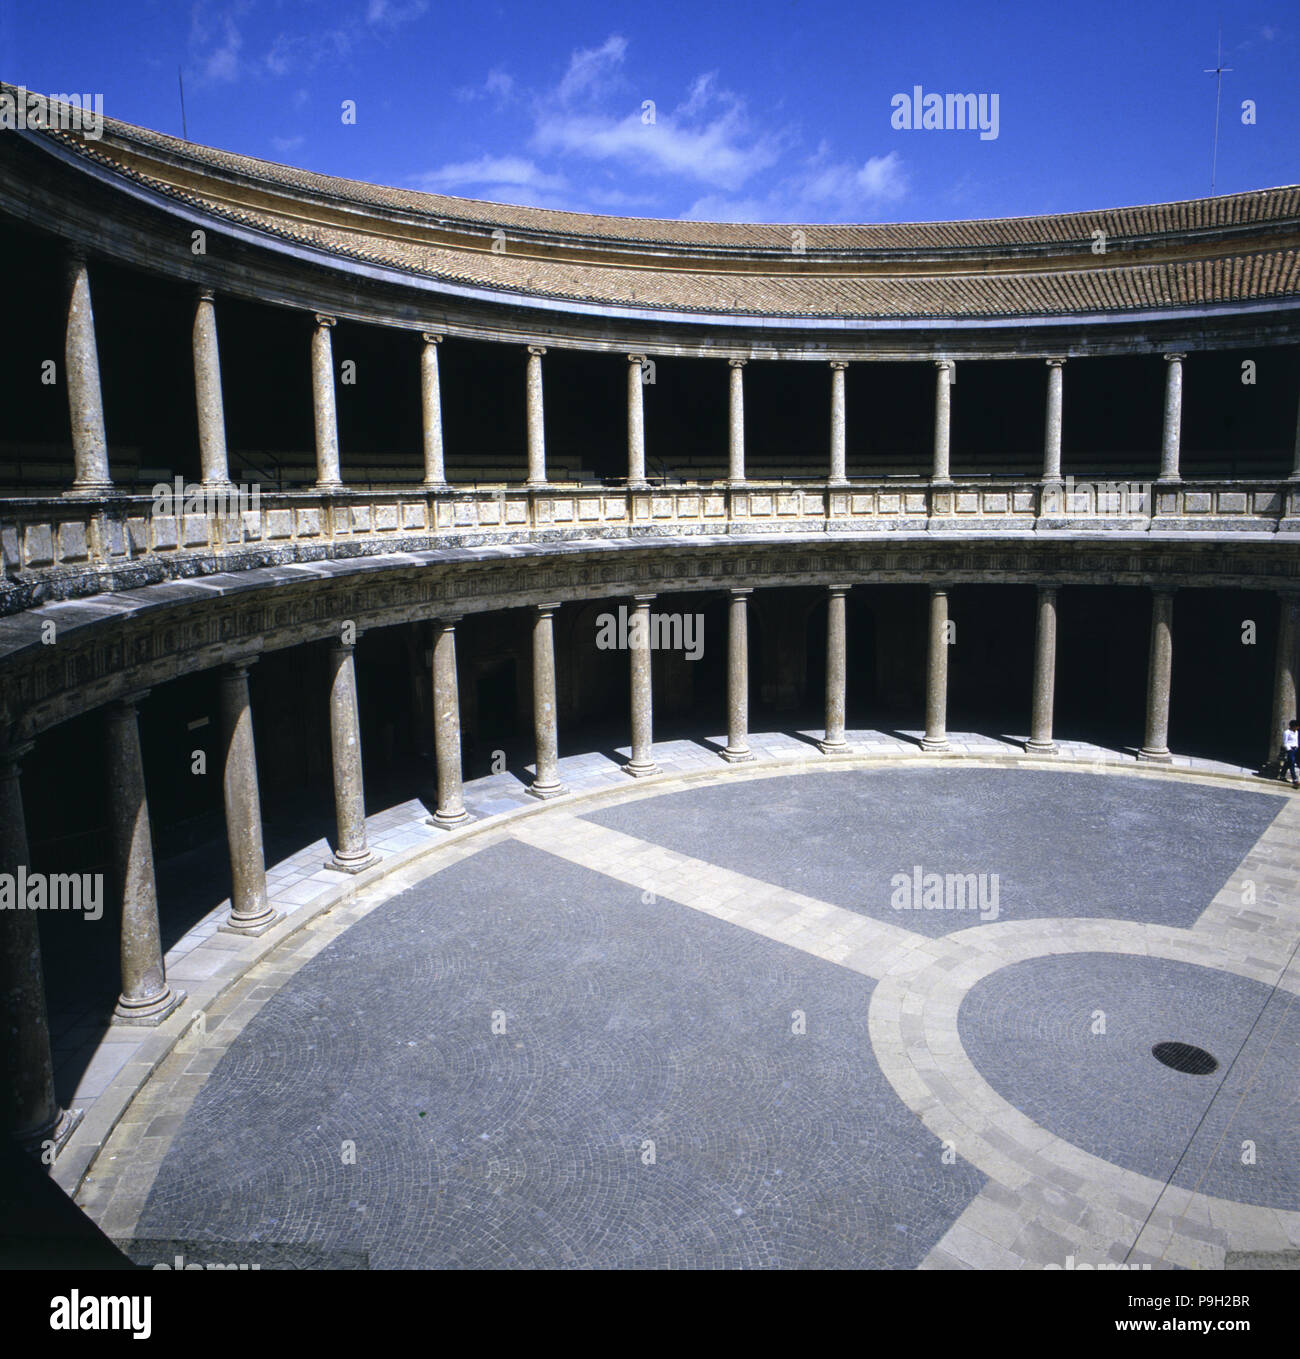 Runde Innenhof des Palastes Karls V. in der Alhambra in Granada, von Pedro Machuca. Stockfoto